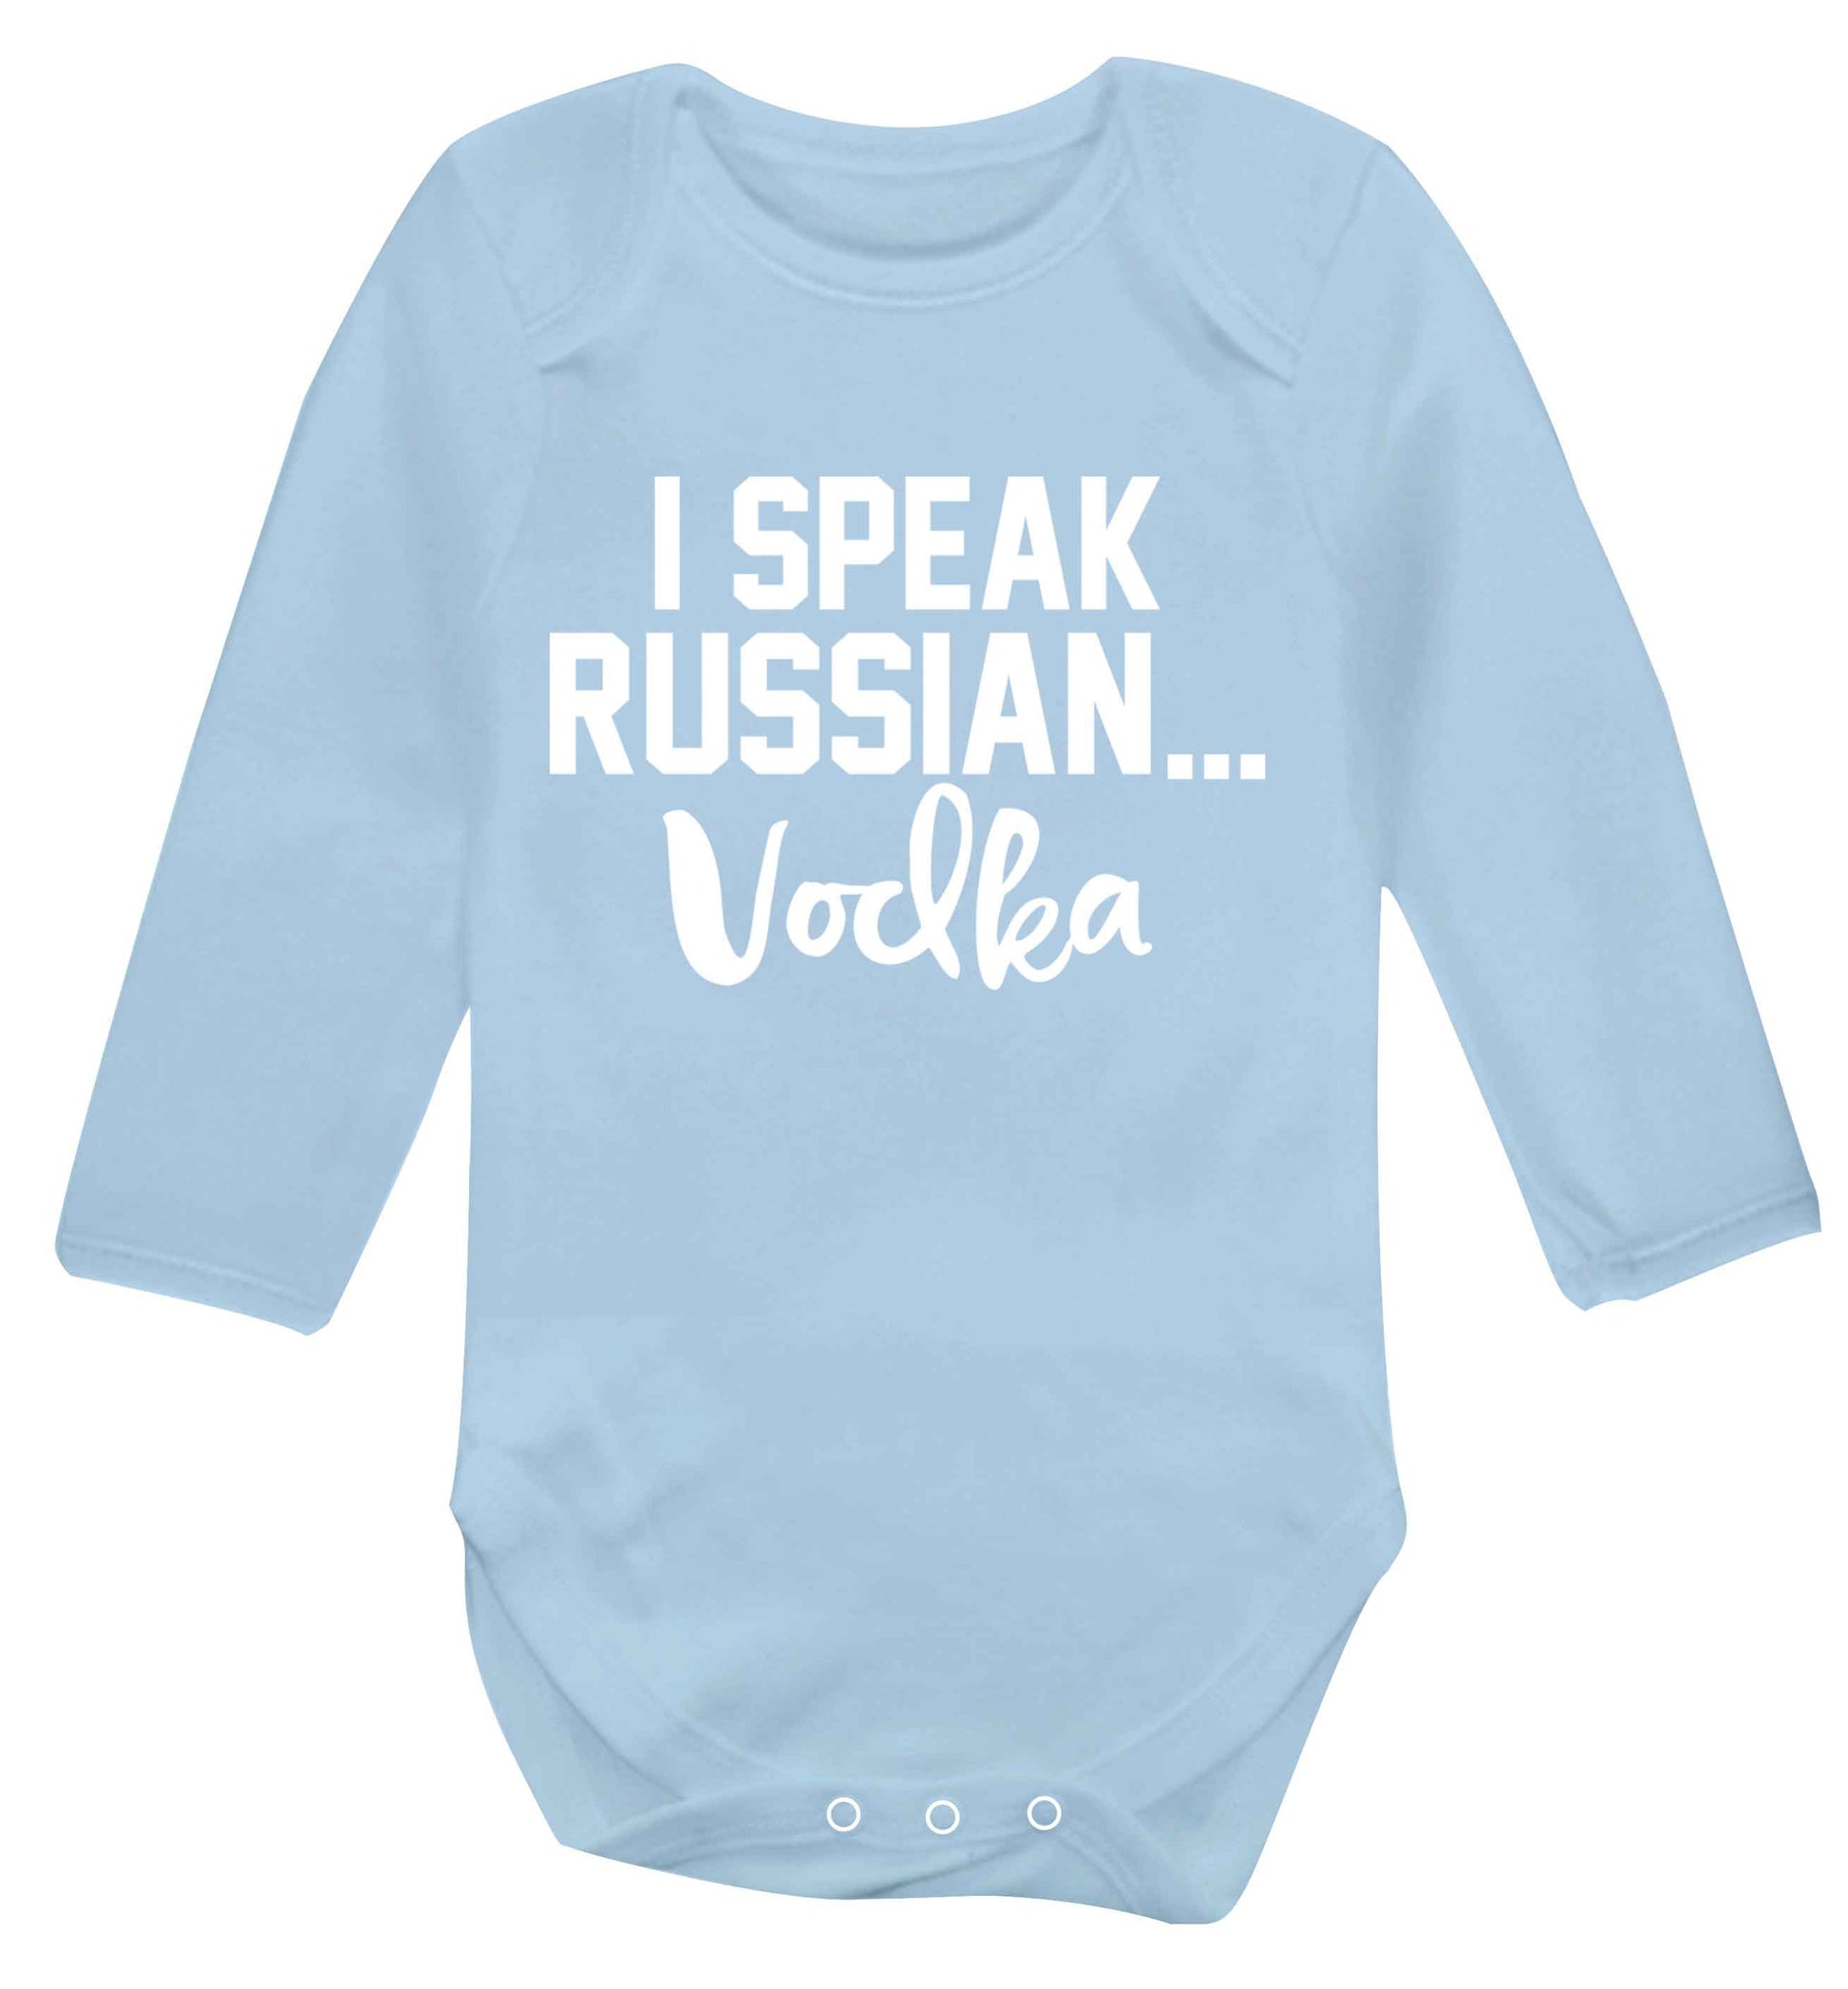 I speak russian...vodka Baby Vest long sleeved pale blue 6-12 months